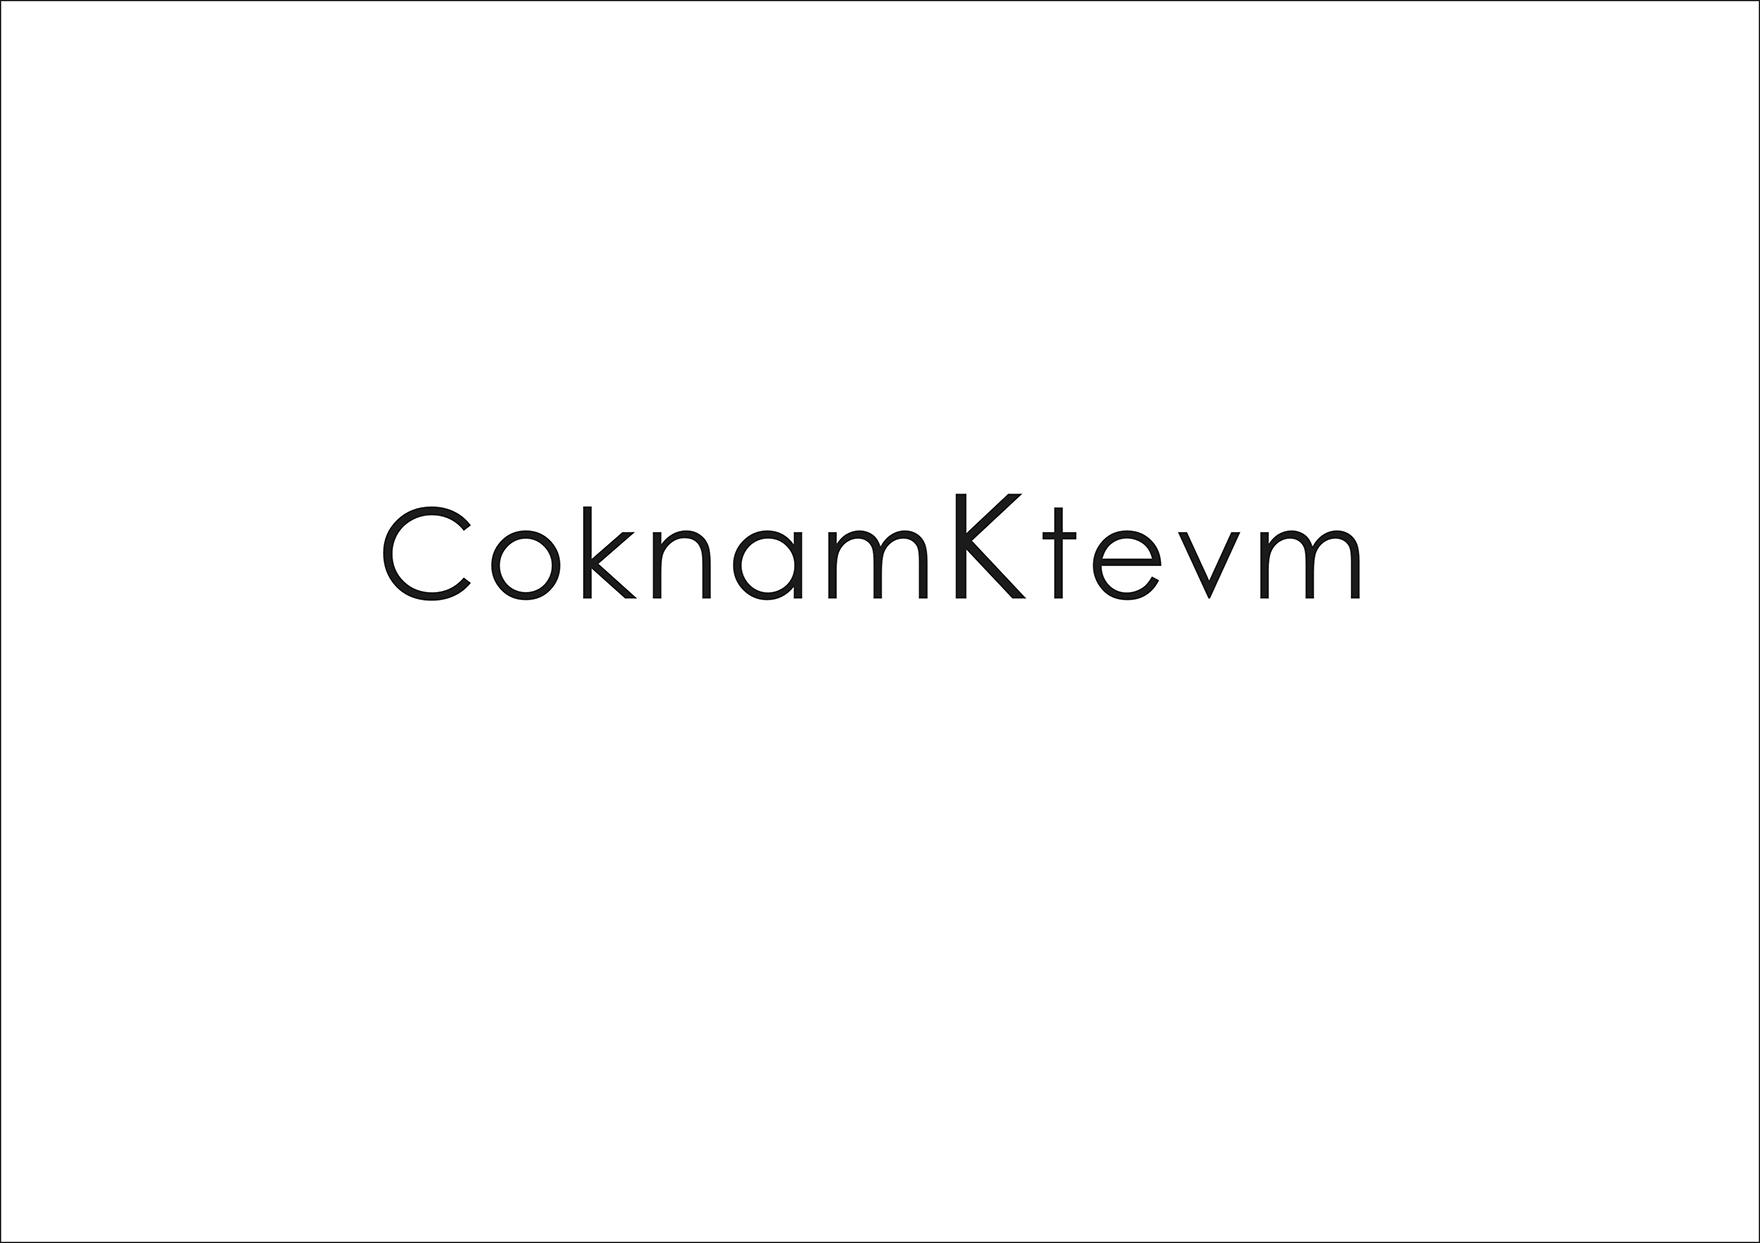 18类-箱包皮具COKNAMKTEVM商标转让